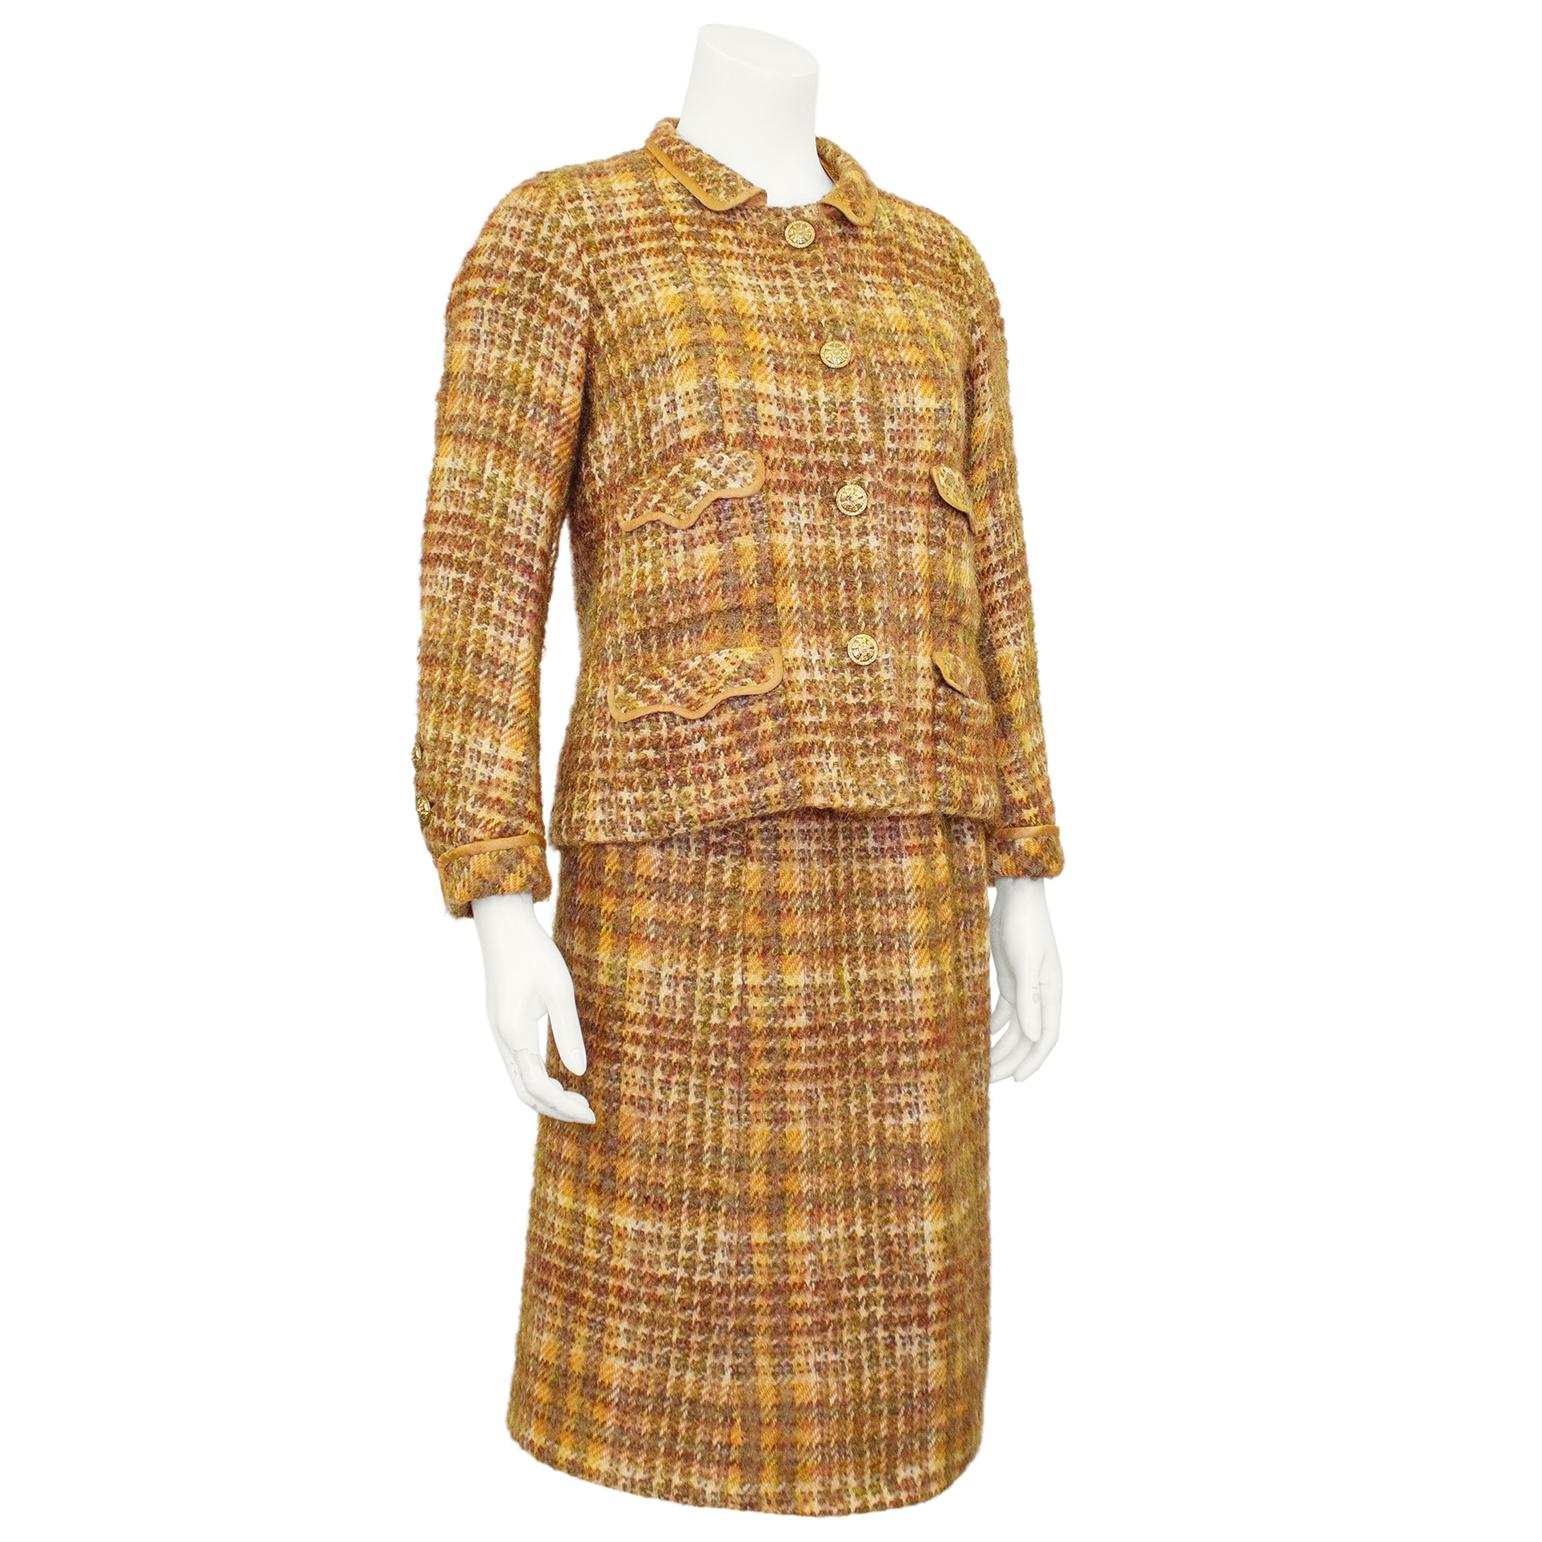 Chanel Haute Couture Jacke und Kleid Ensemble aus den 1960er Jahren. Eine schöne Kombination aus Tweed in Kupfertönen und kupferfarbener Seide. Die Jacke hat einen kleinen Peter-Pan-Kragen, wunderschöne goldfarbene Metallknöpfe mit Blumendetails,